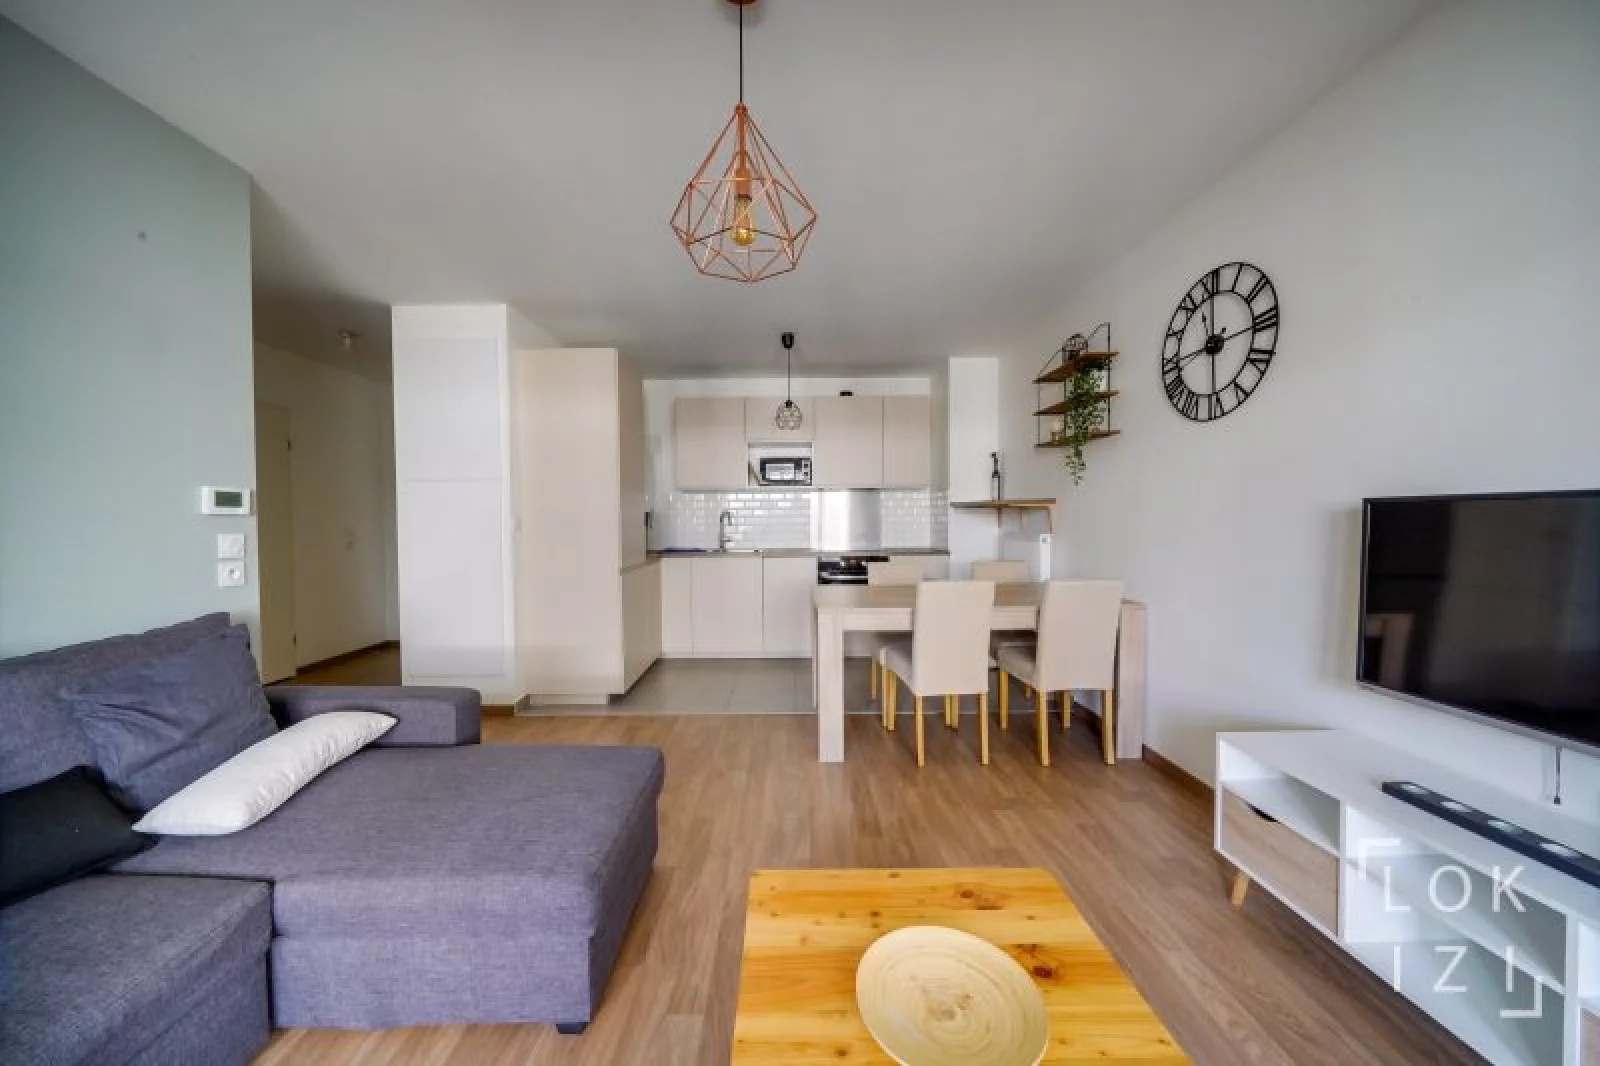 Location appartement meublé 2 pièces 44m² (Bordeaux / Chartrons)